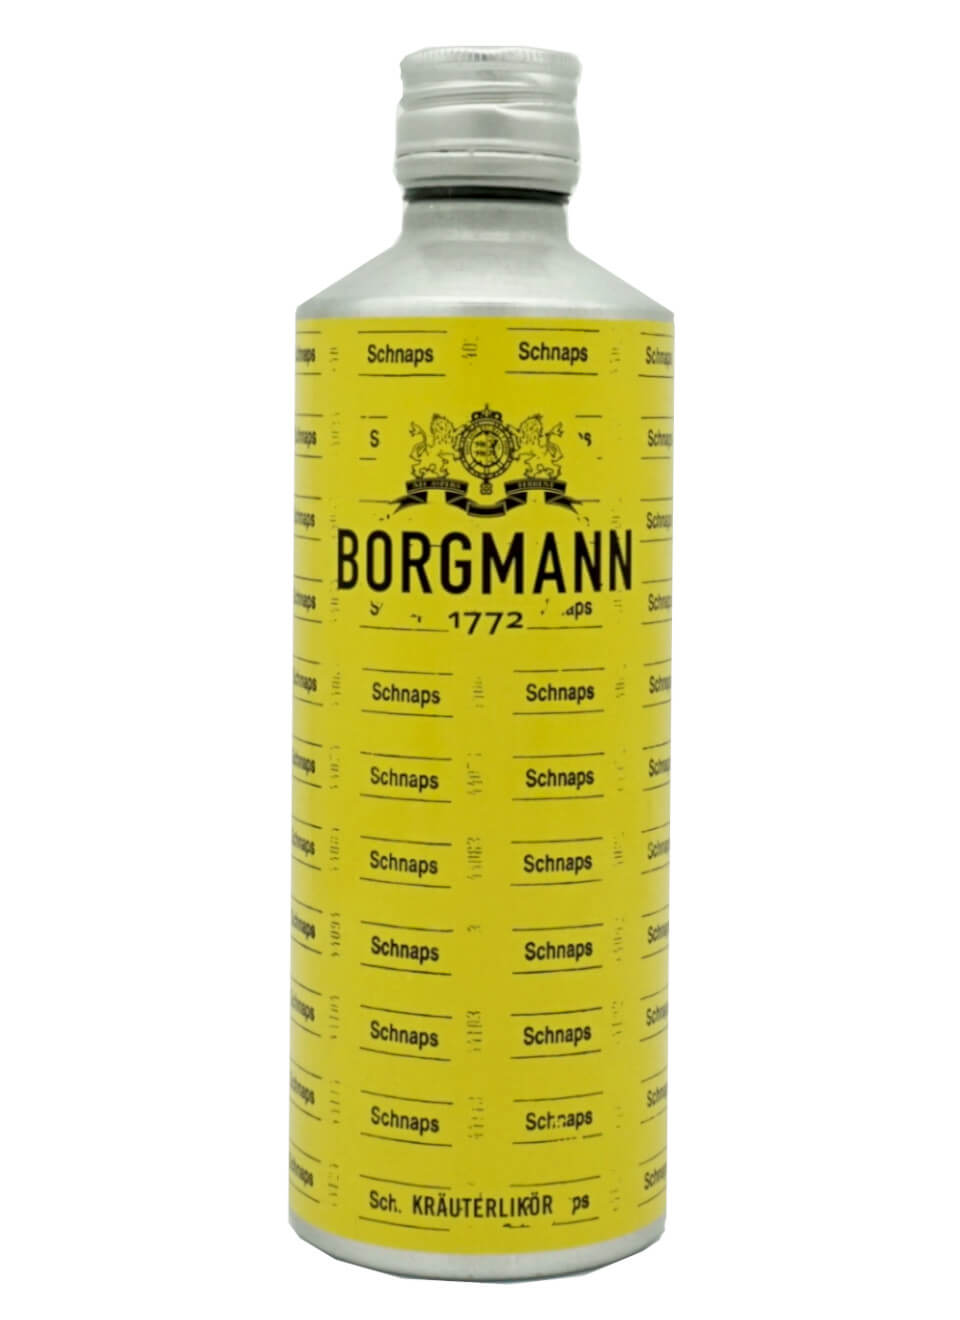 Borgmann Kräuterlikör 1772 0,5 L günstig kaufen | Spirituosenworld.de -  Online Shop für Spirituosen und Barzubehör